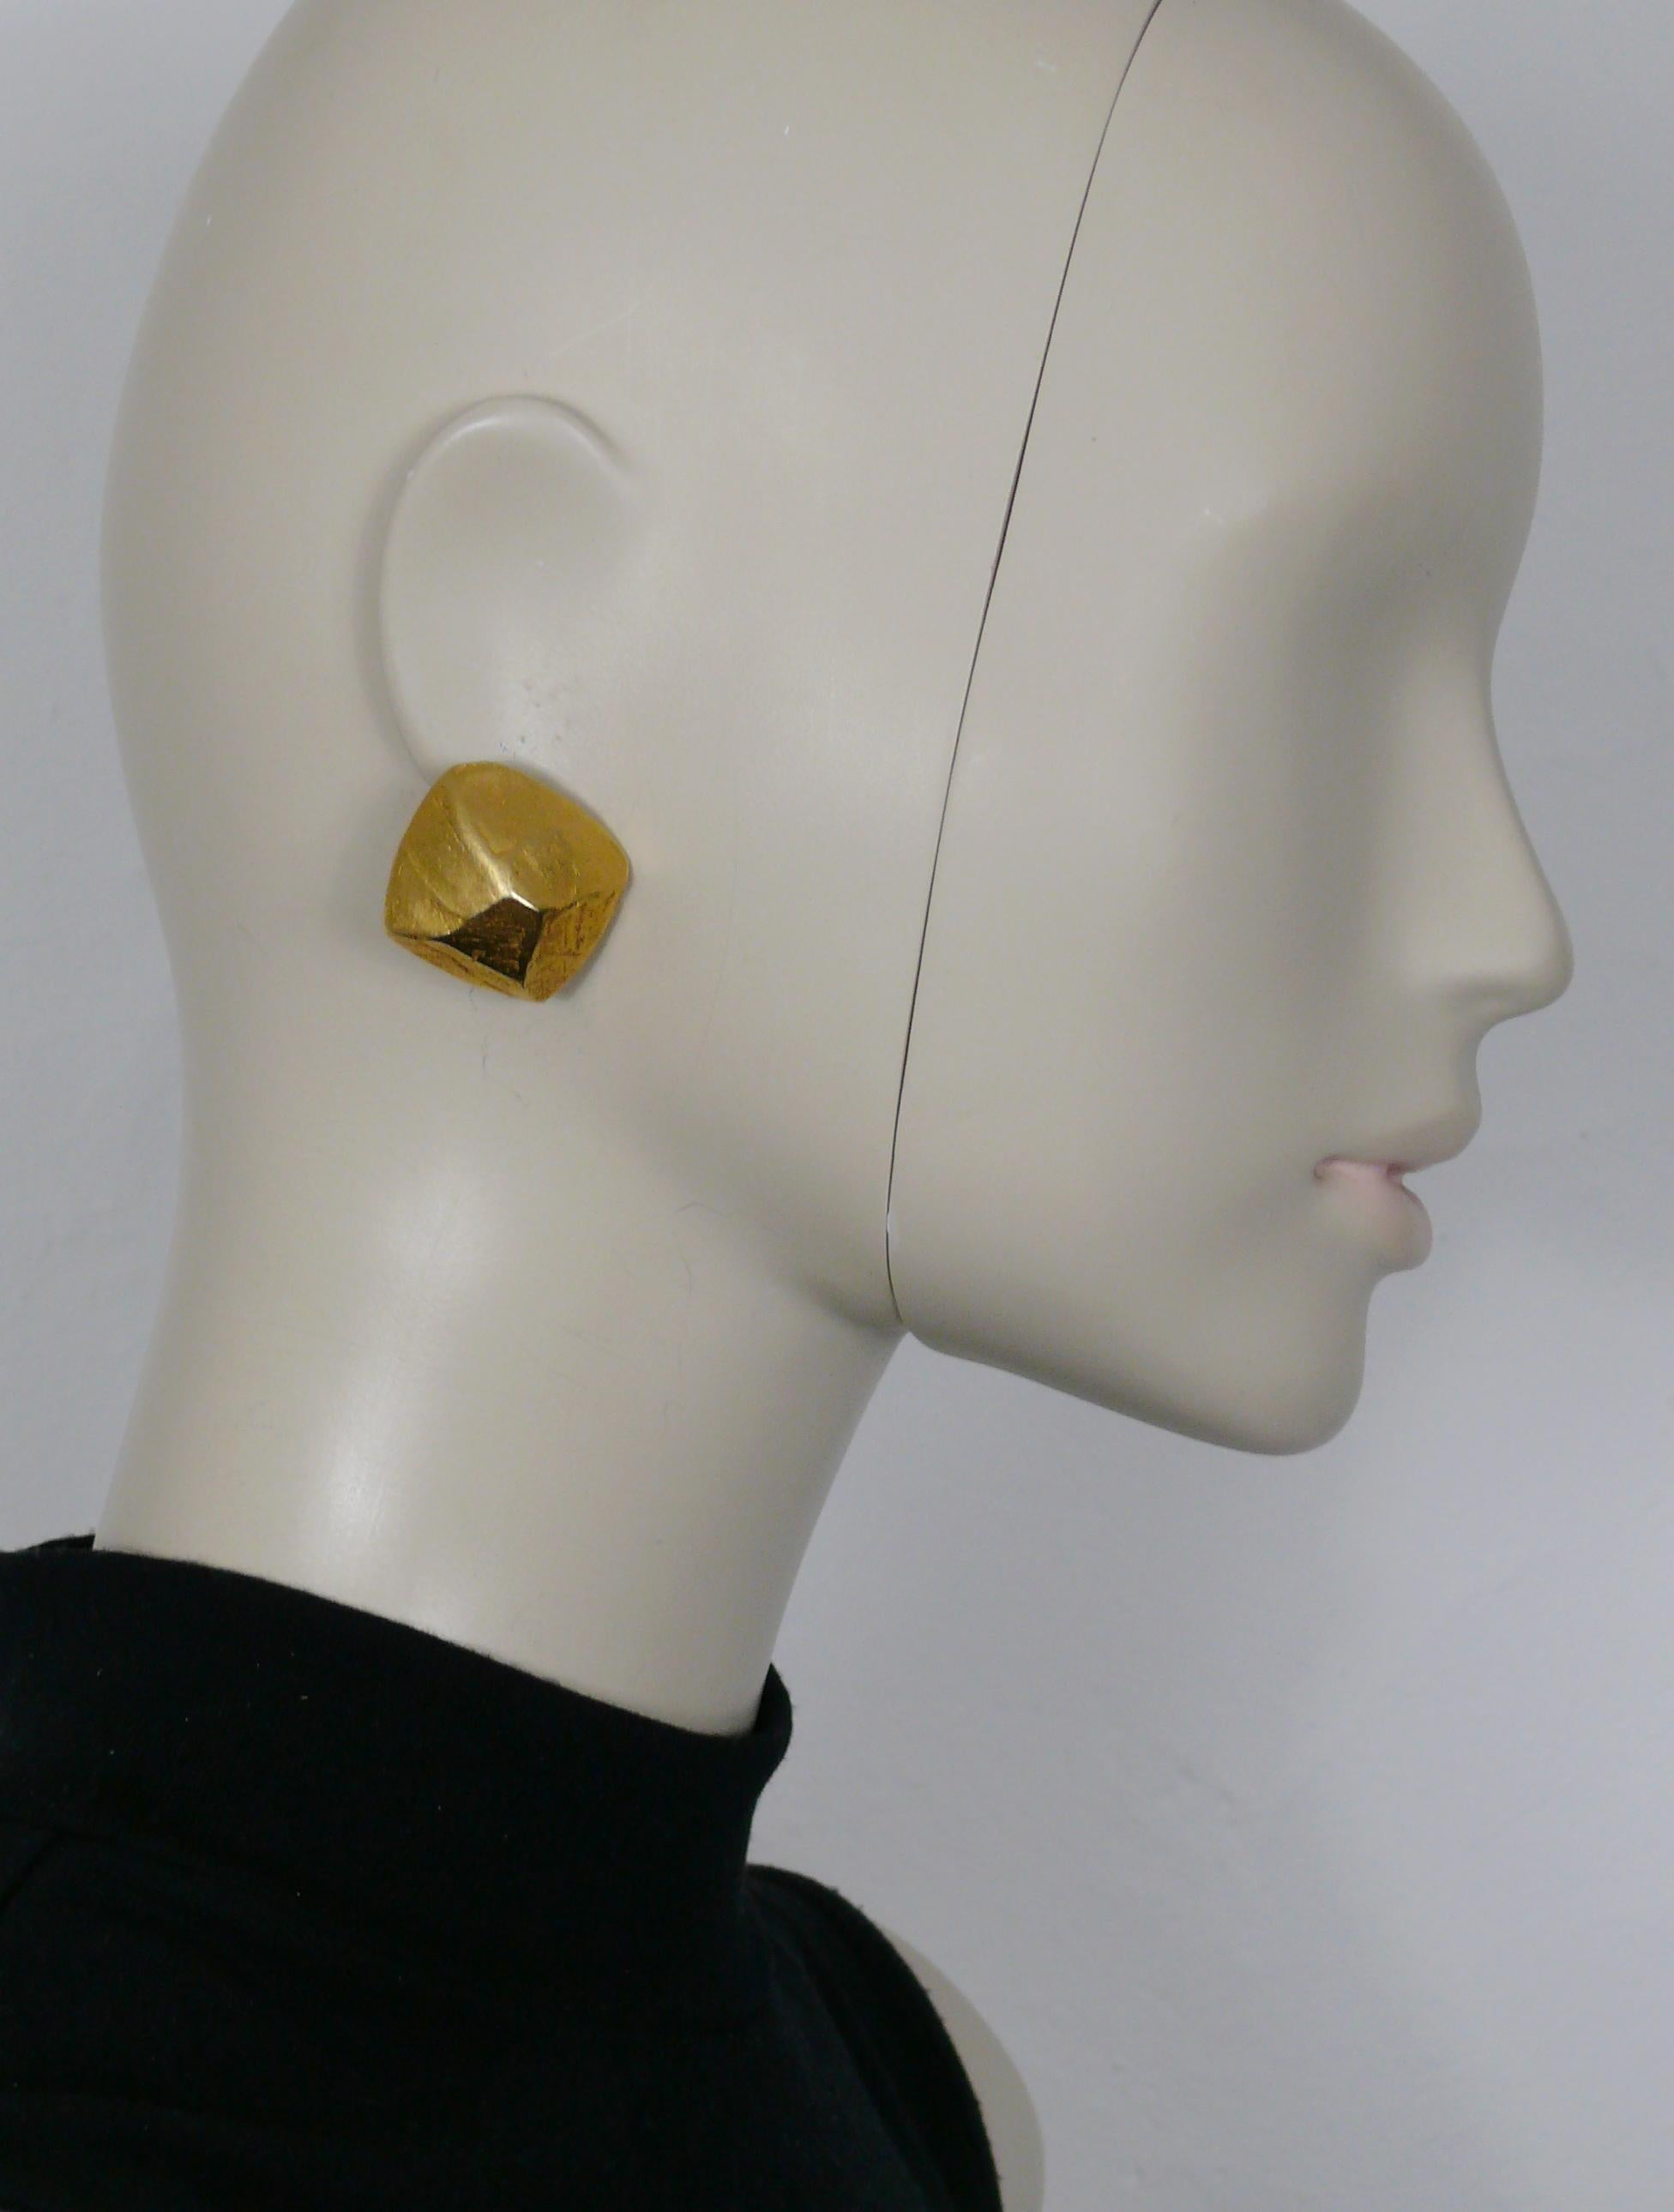 Boucles d'oreilles HERMES vintage en or, avec un motif de pépite texturé en 3 dimensions.

Embossé HERMES PARIS Bijouterie Fantaisie.

Mesures indicatives : hauteur maximale d'environ 2,5 cm (0,98 pouce) / largeur maximale d'environ 2,7 cm (1,06